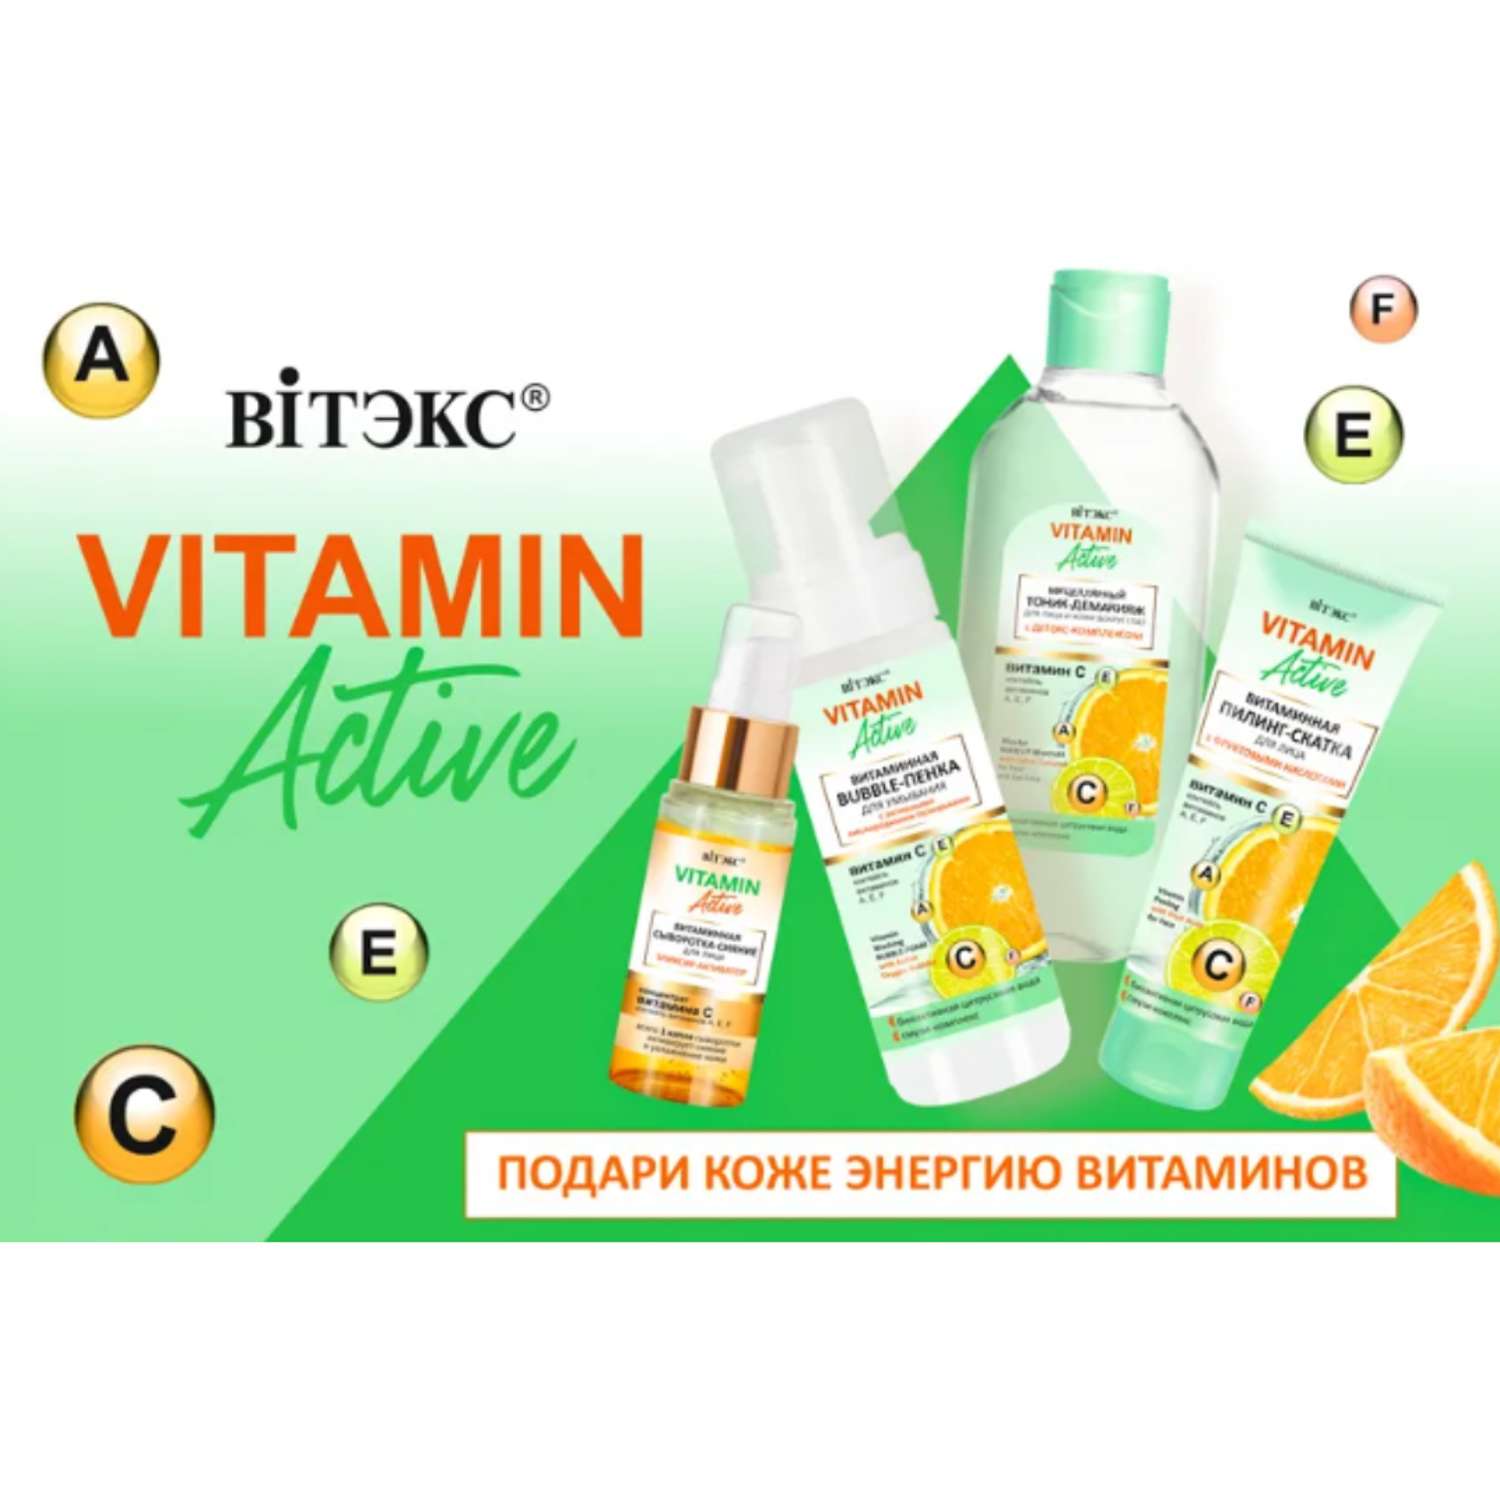 Vitamin Active Витэкс. Белорусская косметика витамин. Белорусская косметика для лица. Белита пенка для умывания витамин.